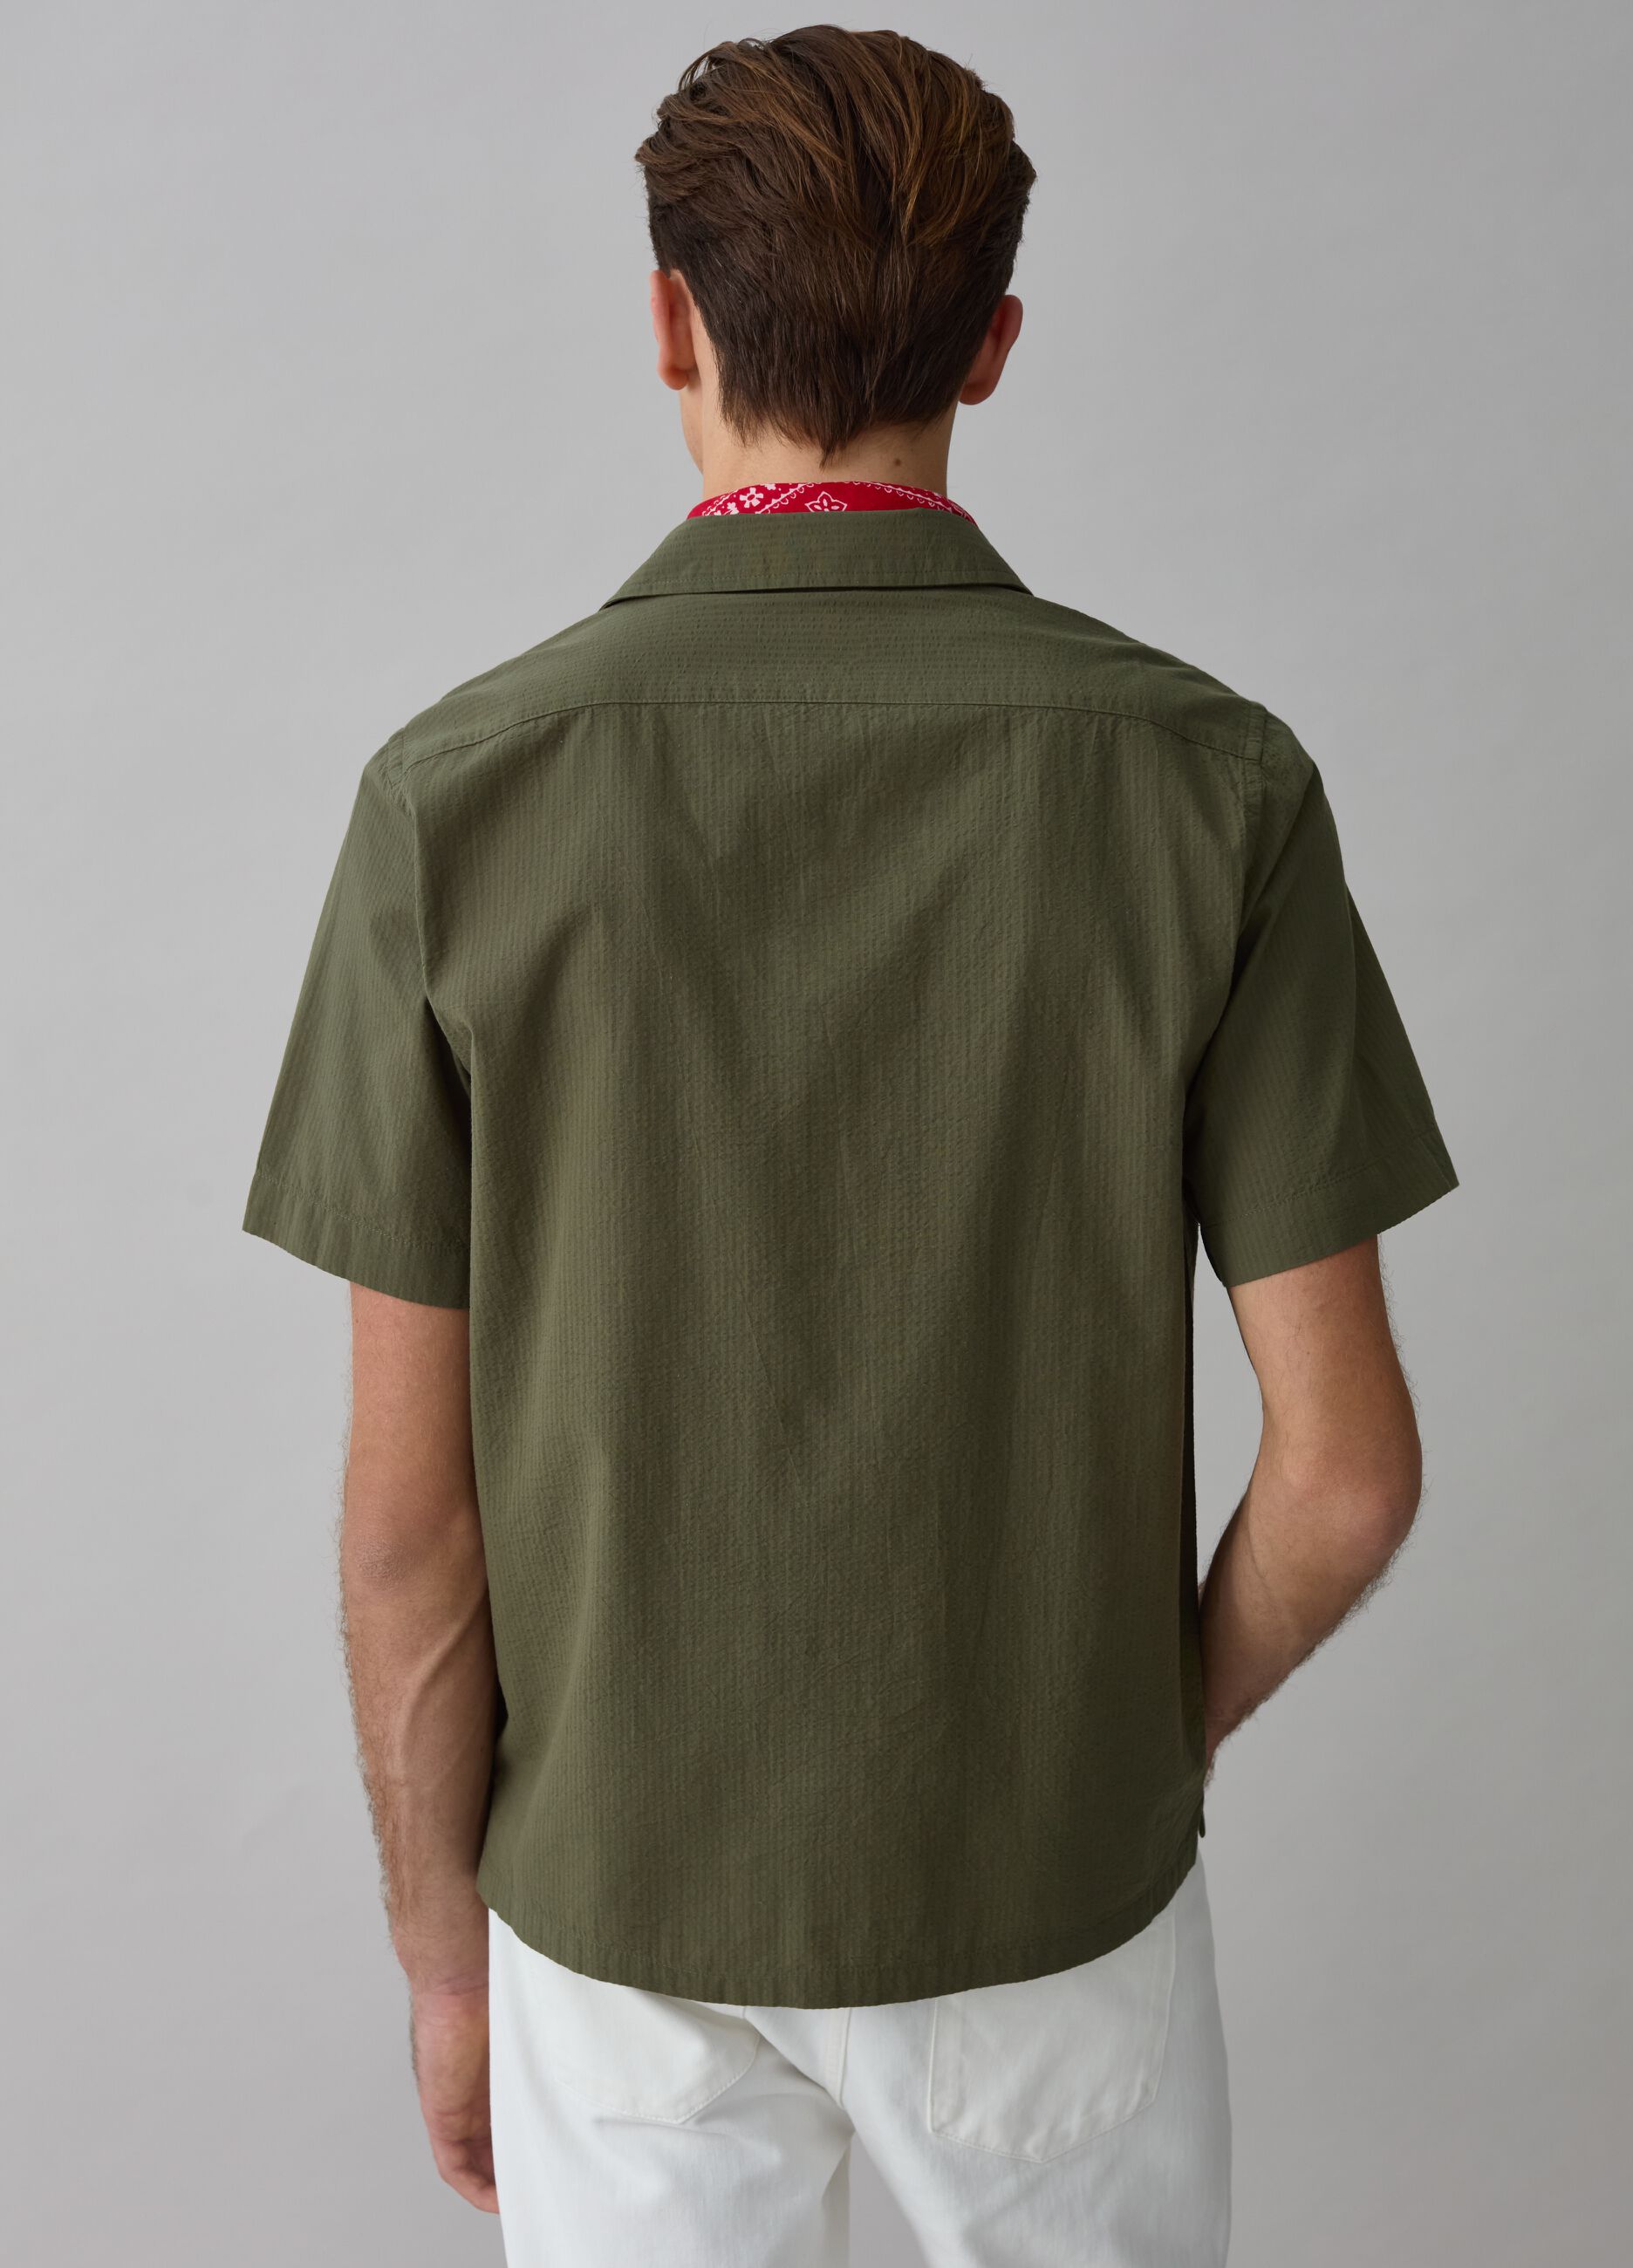 Short-sleeved shirt in seersucker with pocket